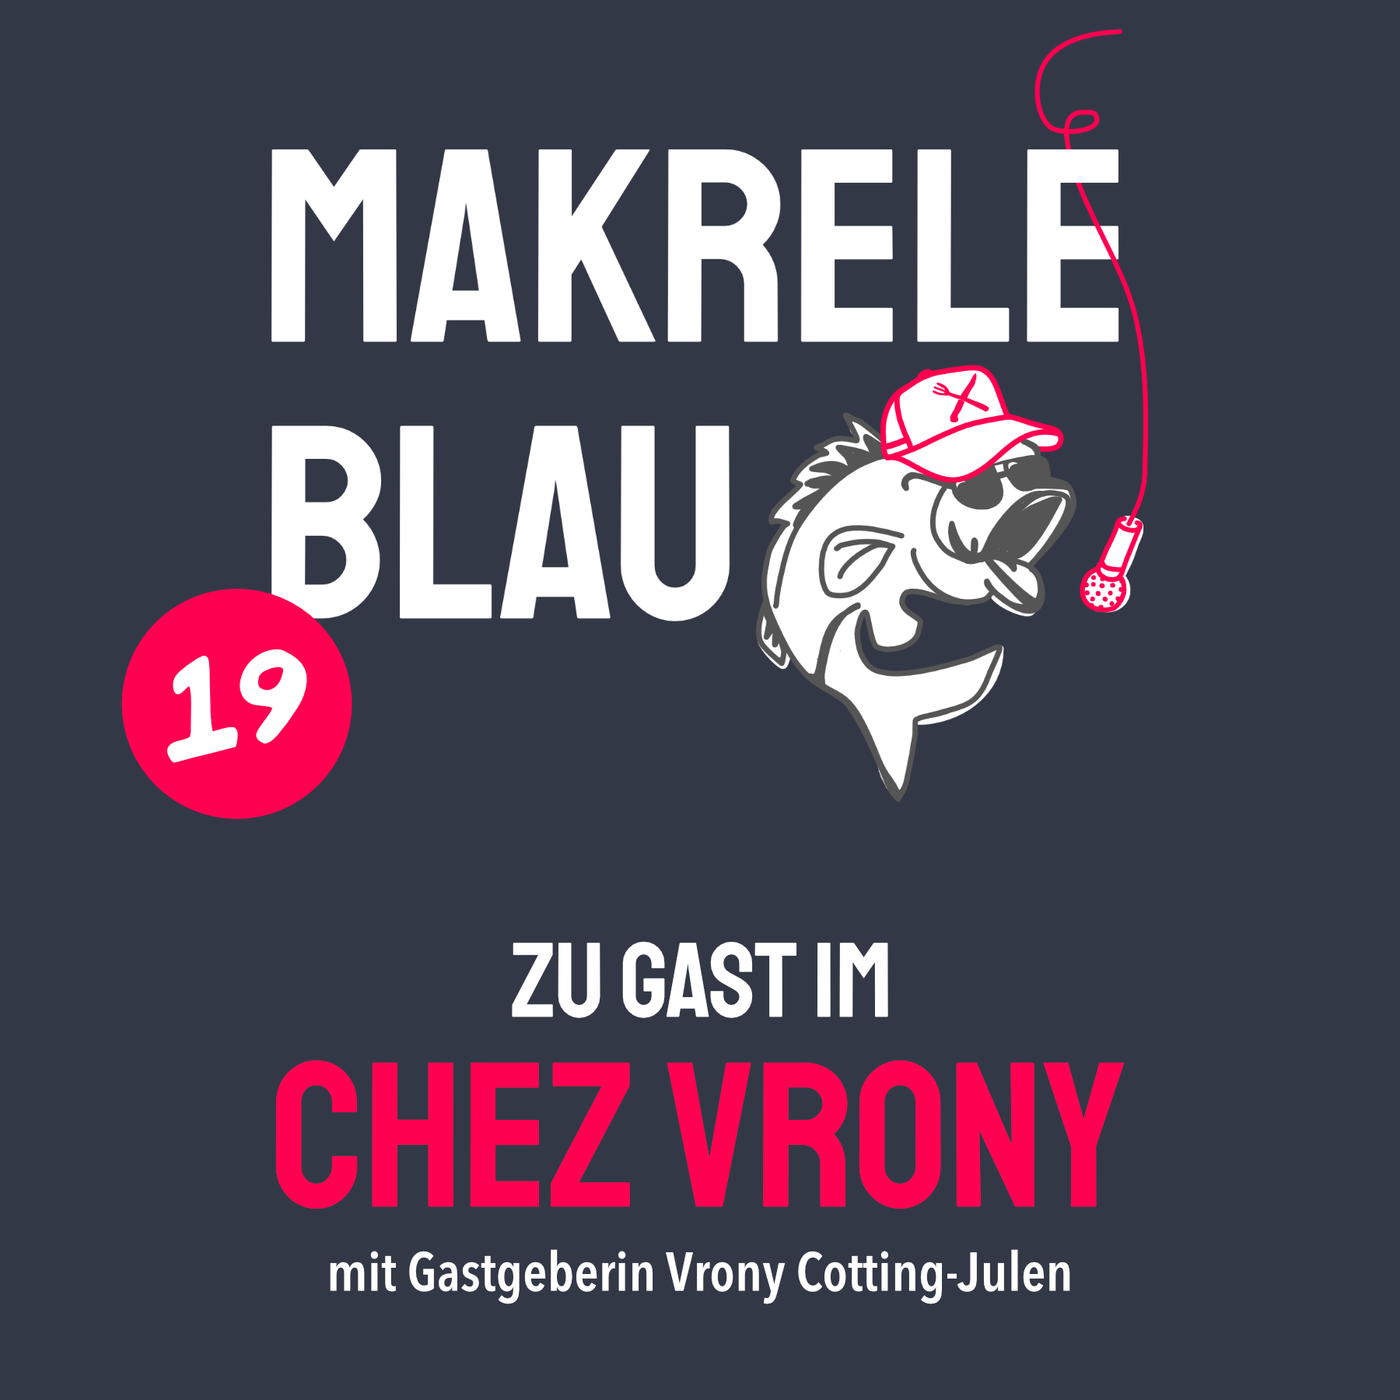 Makrele Blau #19 – z’Gast im Chez Vrony, mit dä Vrony Cotting-Julen